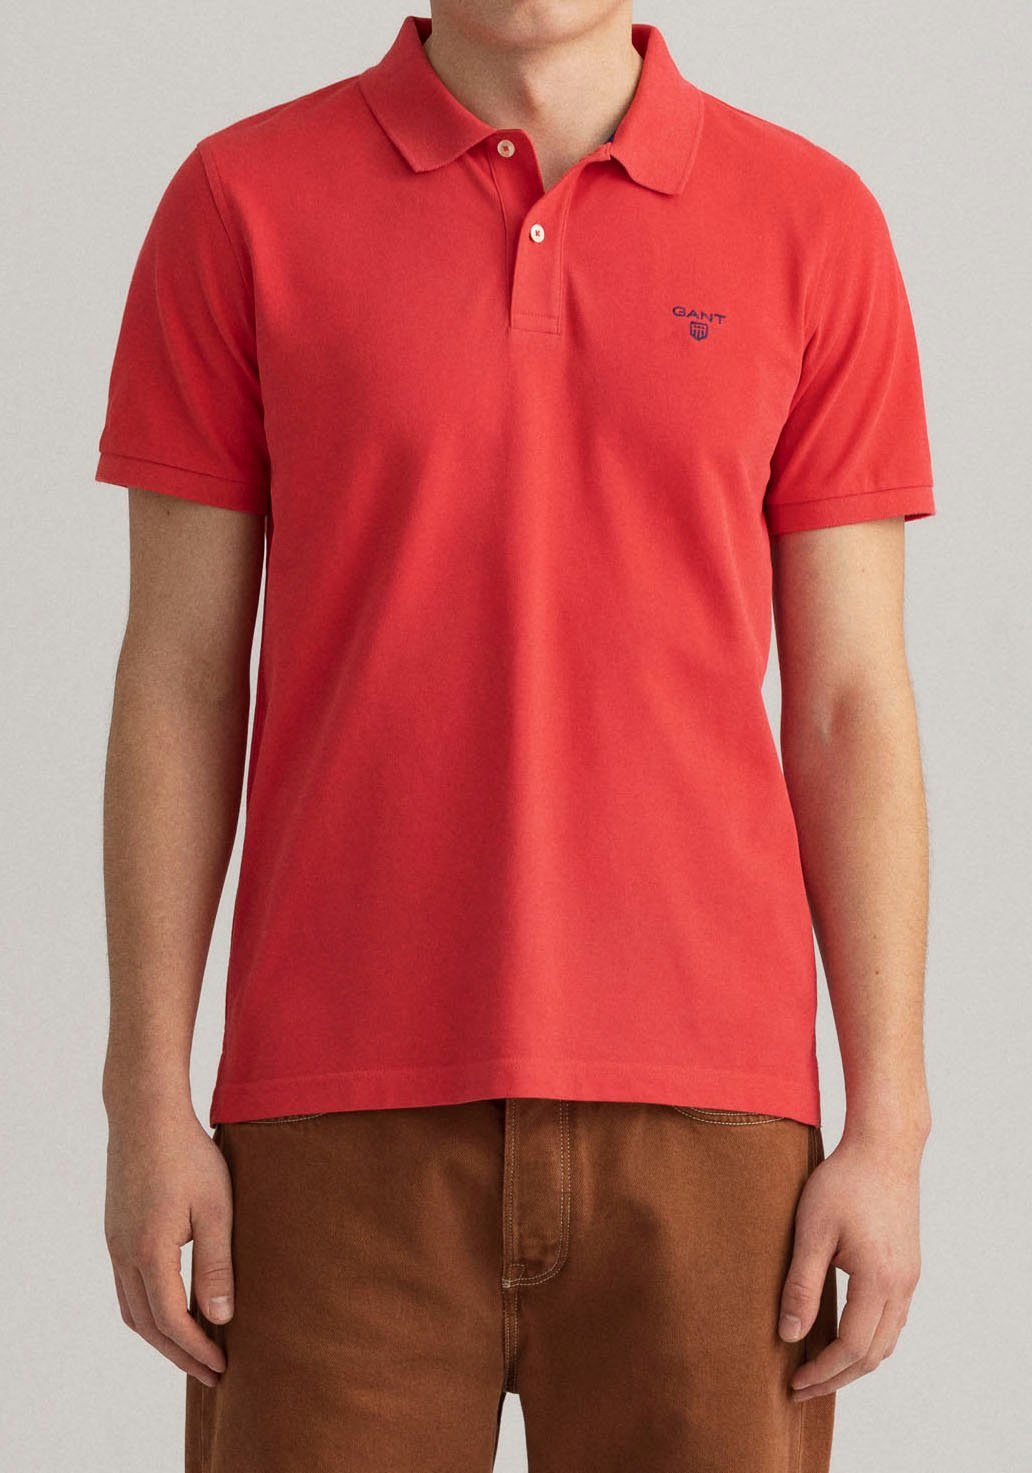 Gant Poloshirt »Summer Pique« mit kleinem Marken-Logo online kaufen | OTTO